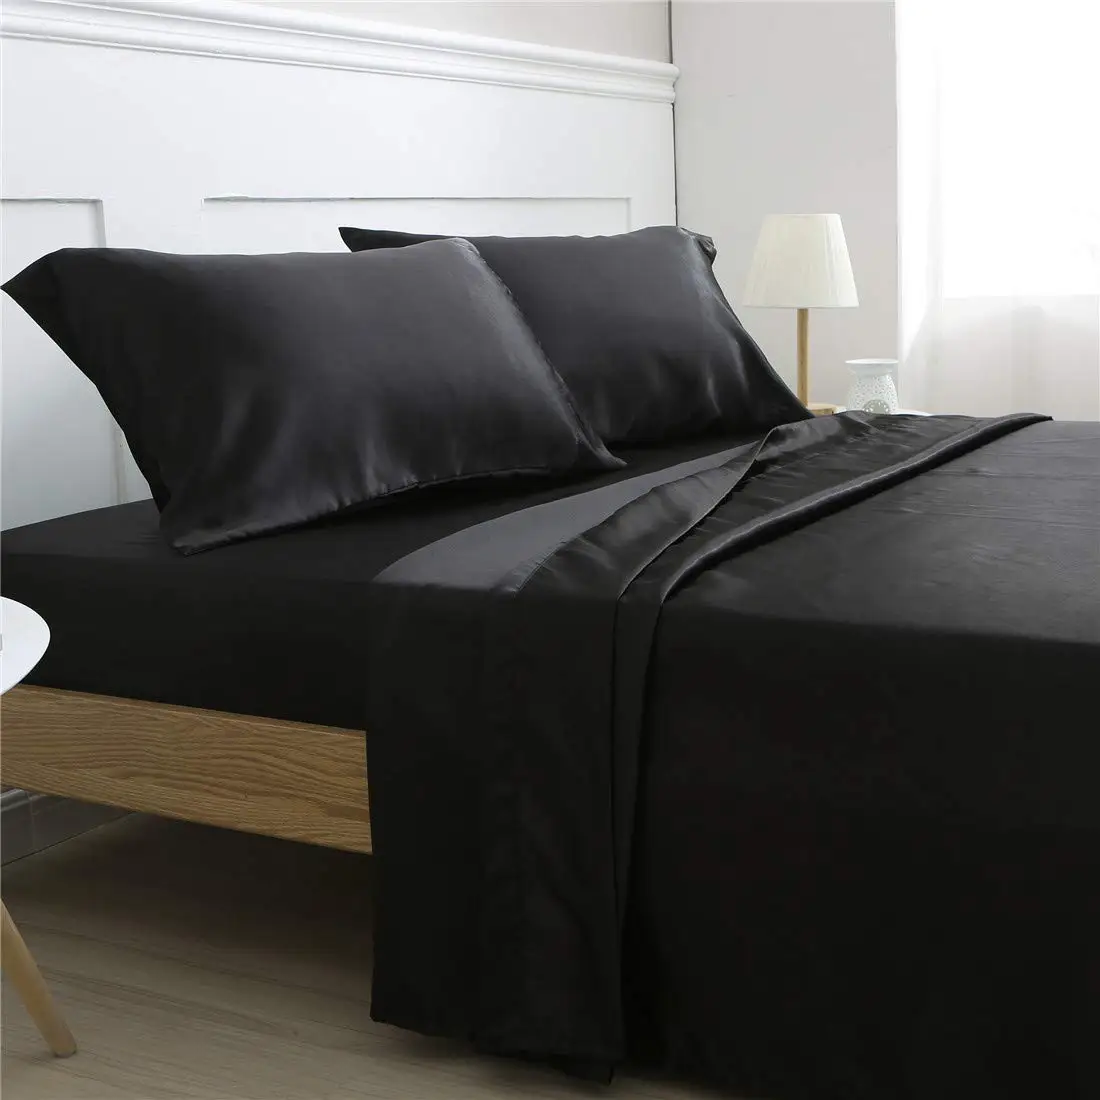 Cheap Black Satin Bedding Set Find Black Satin Bedding Set Deals On Line At Alibaba Com